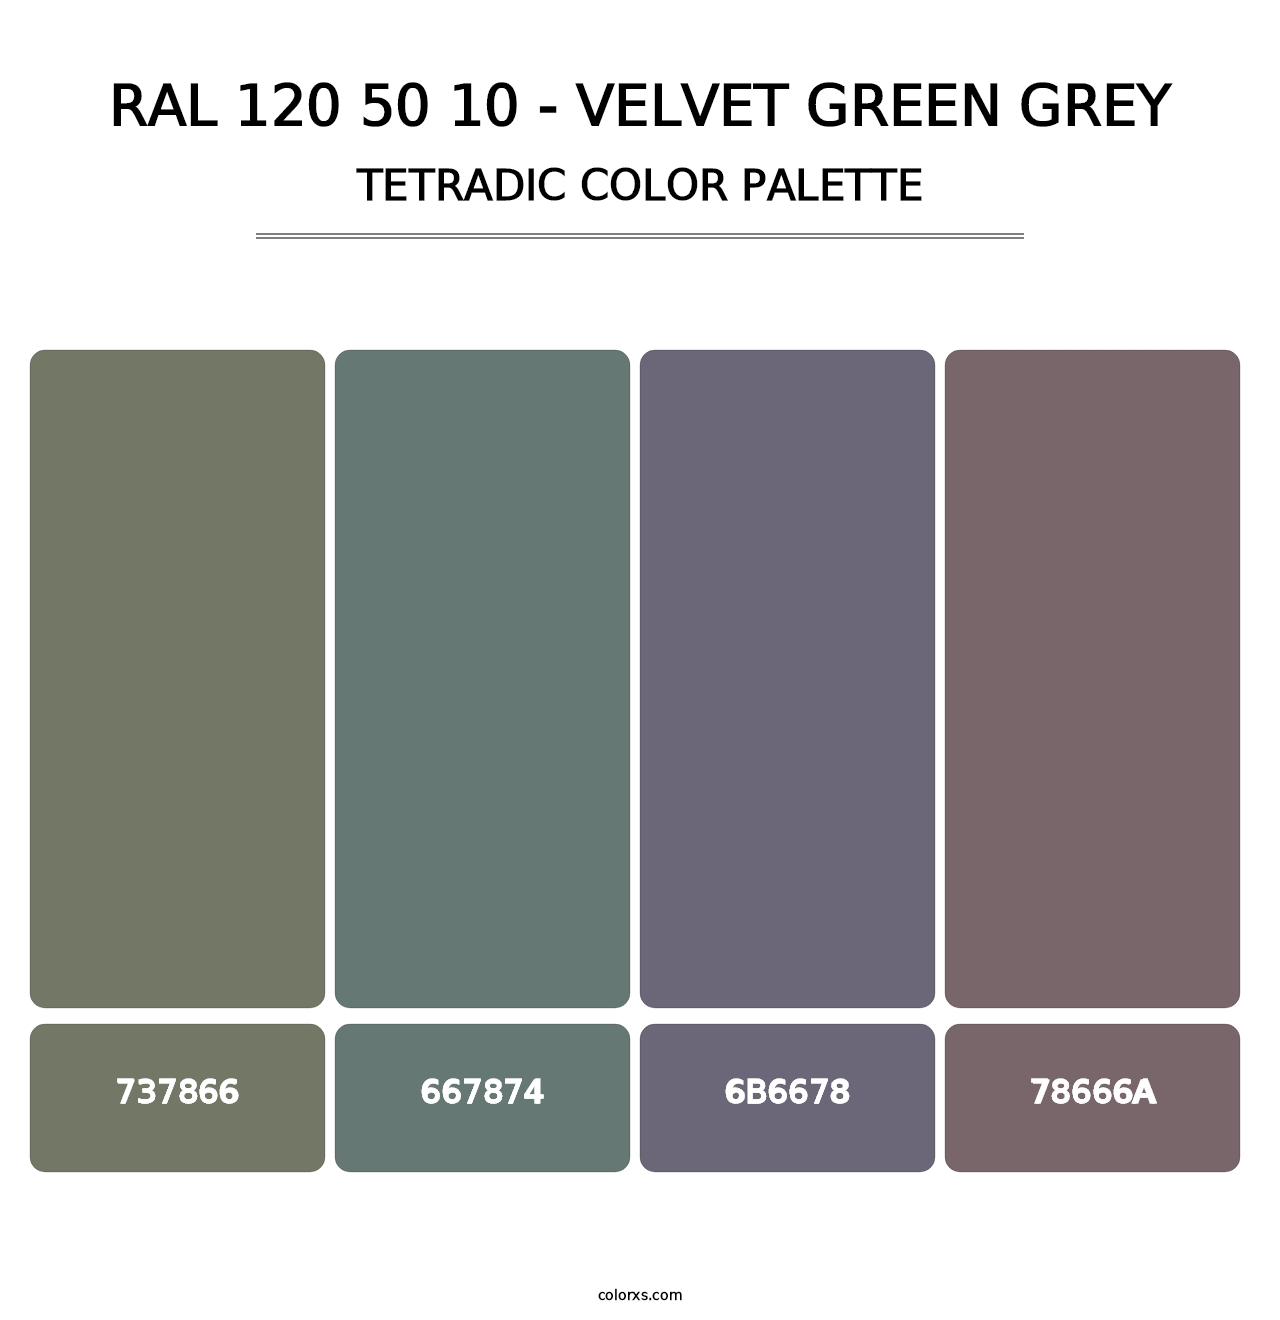 RAL 120 50 10 - Velvet Green Grey - Tetradic Color Palette